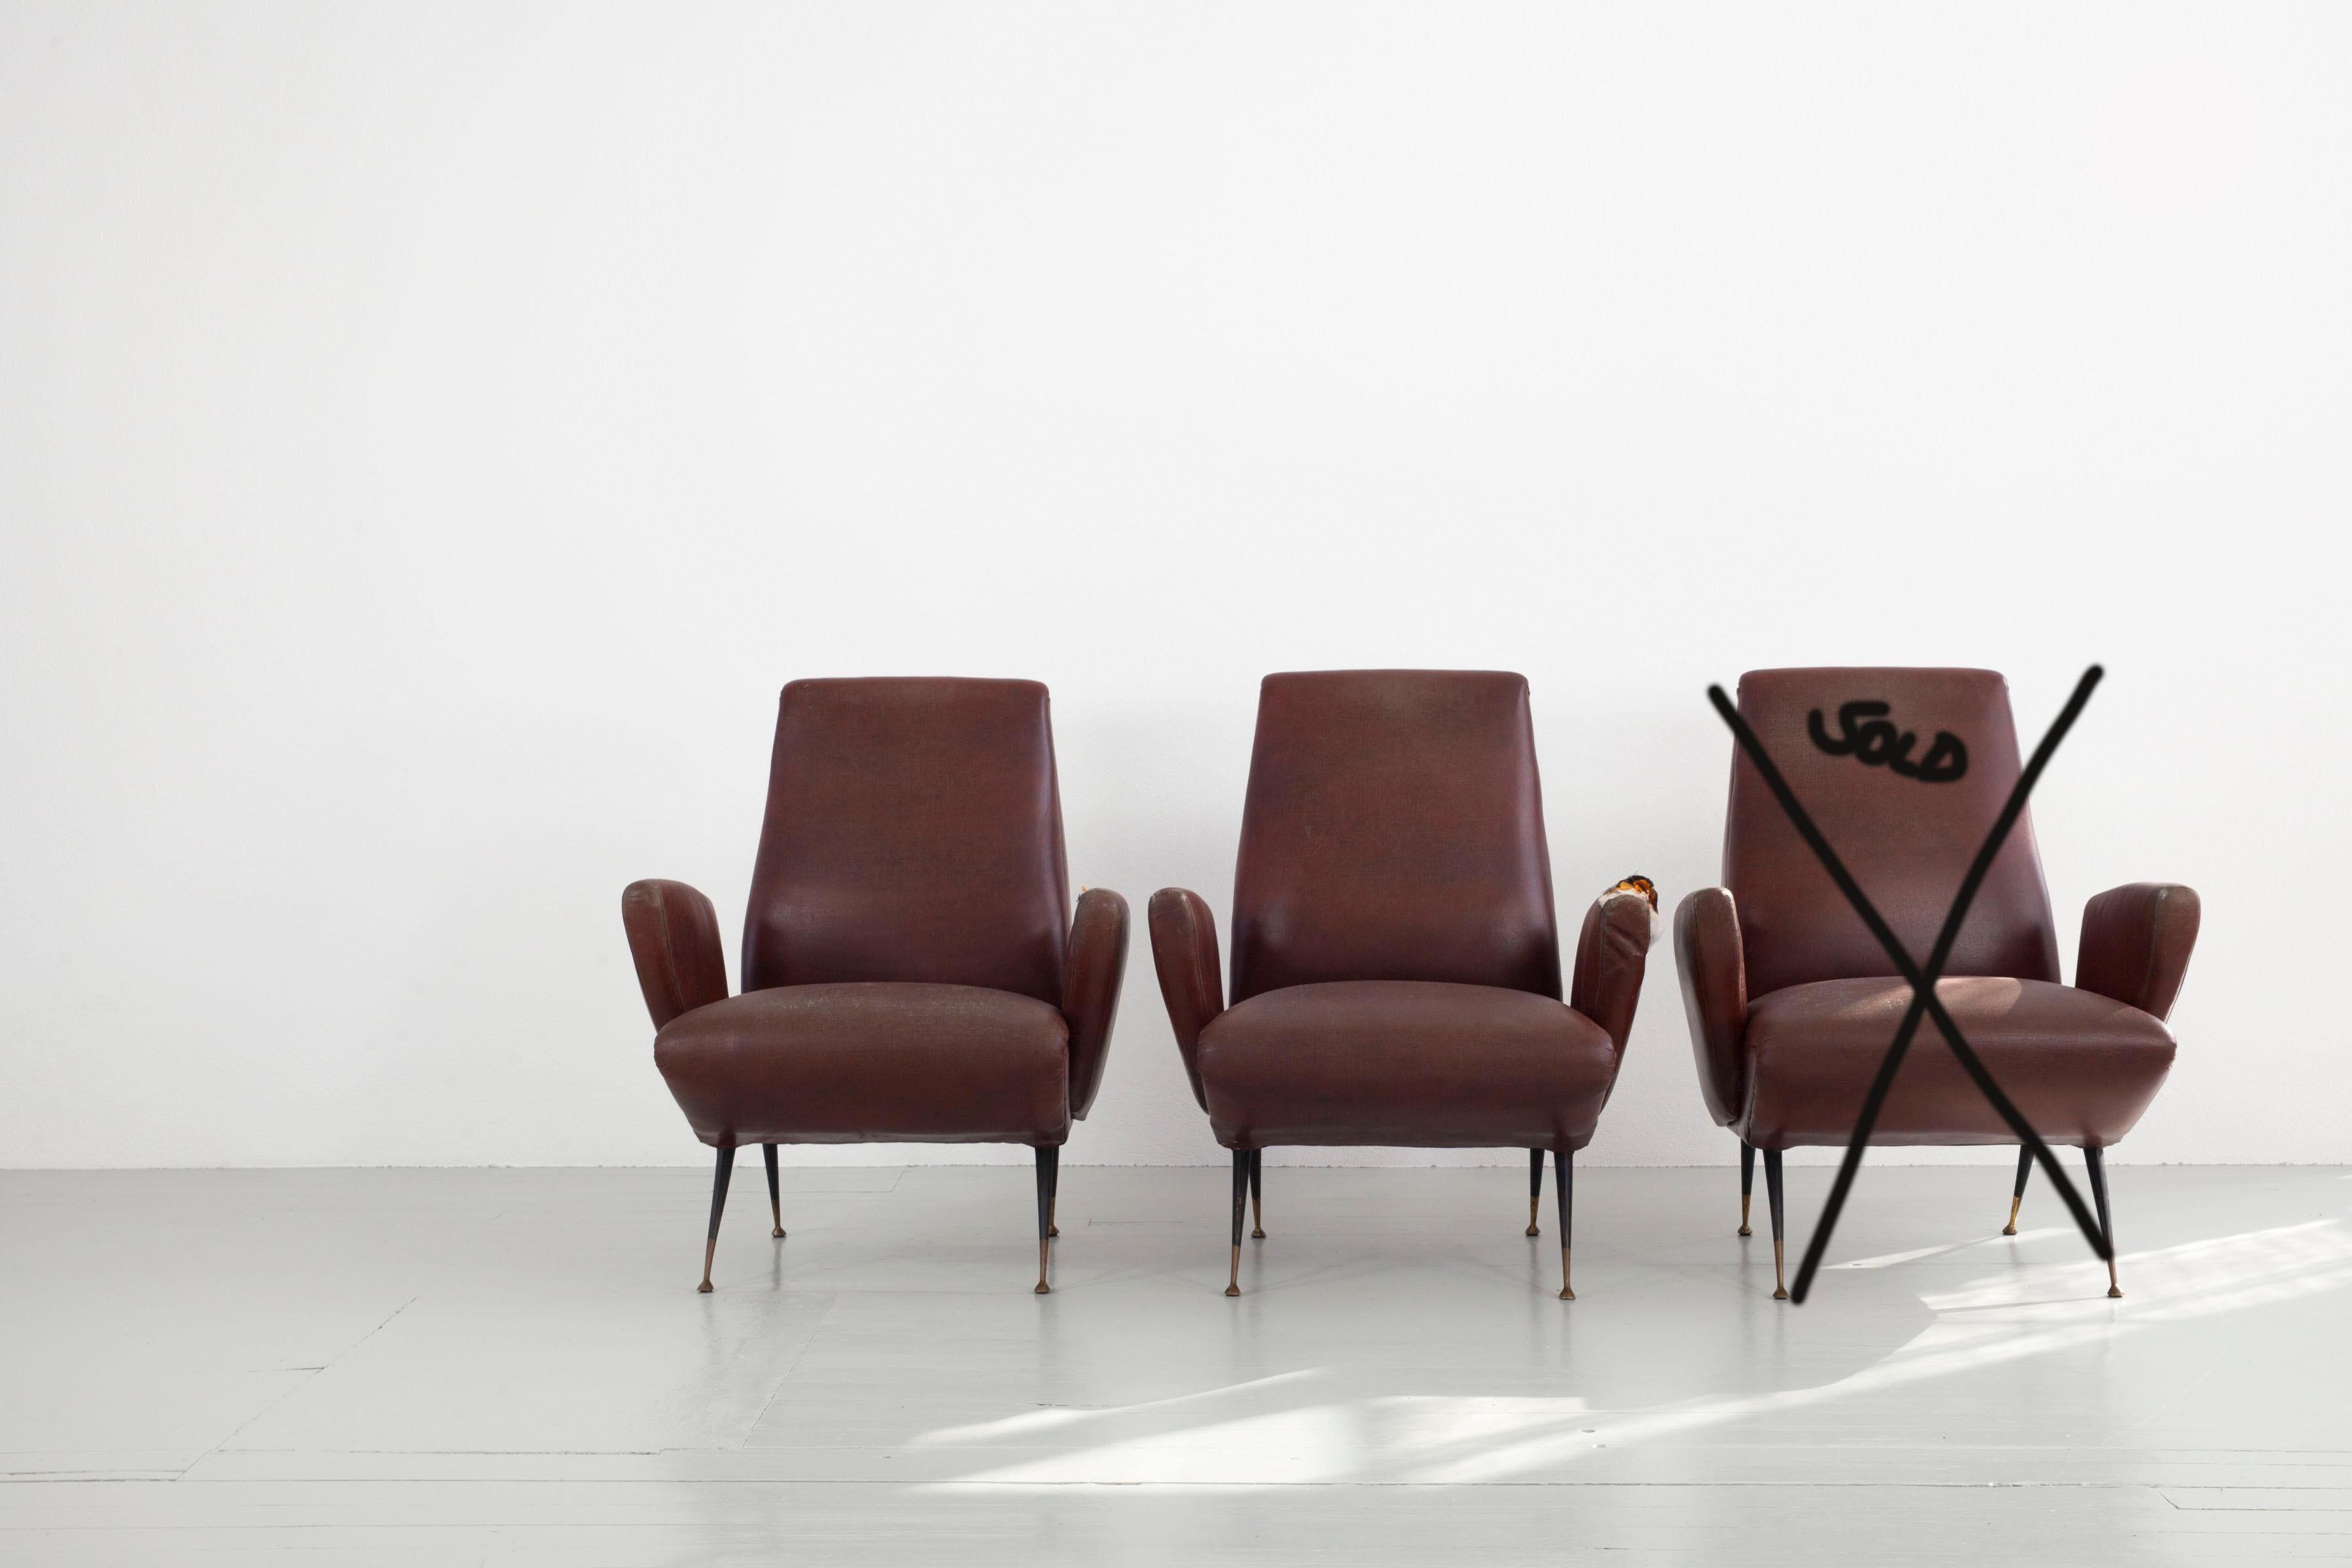 Deux fauteuils, conçus par Nino Zondada, Italie, années 1950. Les fauteuils sont recouverts de cuir vinyle et présentent des bases métalliques classiques avec des éléments en laiton pour un aspect bicolore. Les deux pièces ont besoin d'un nouveau